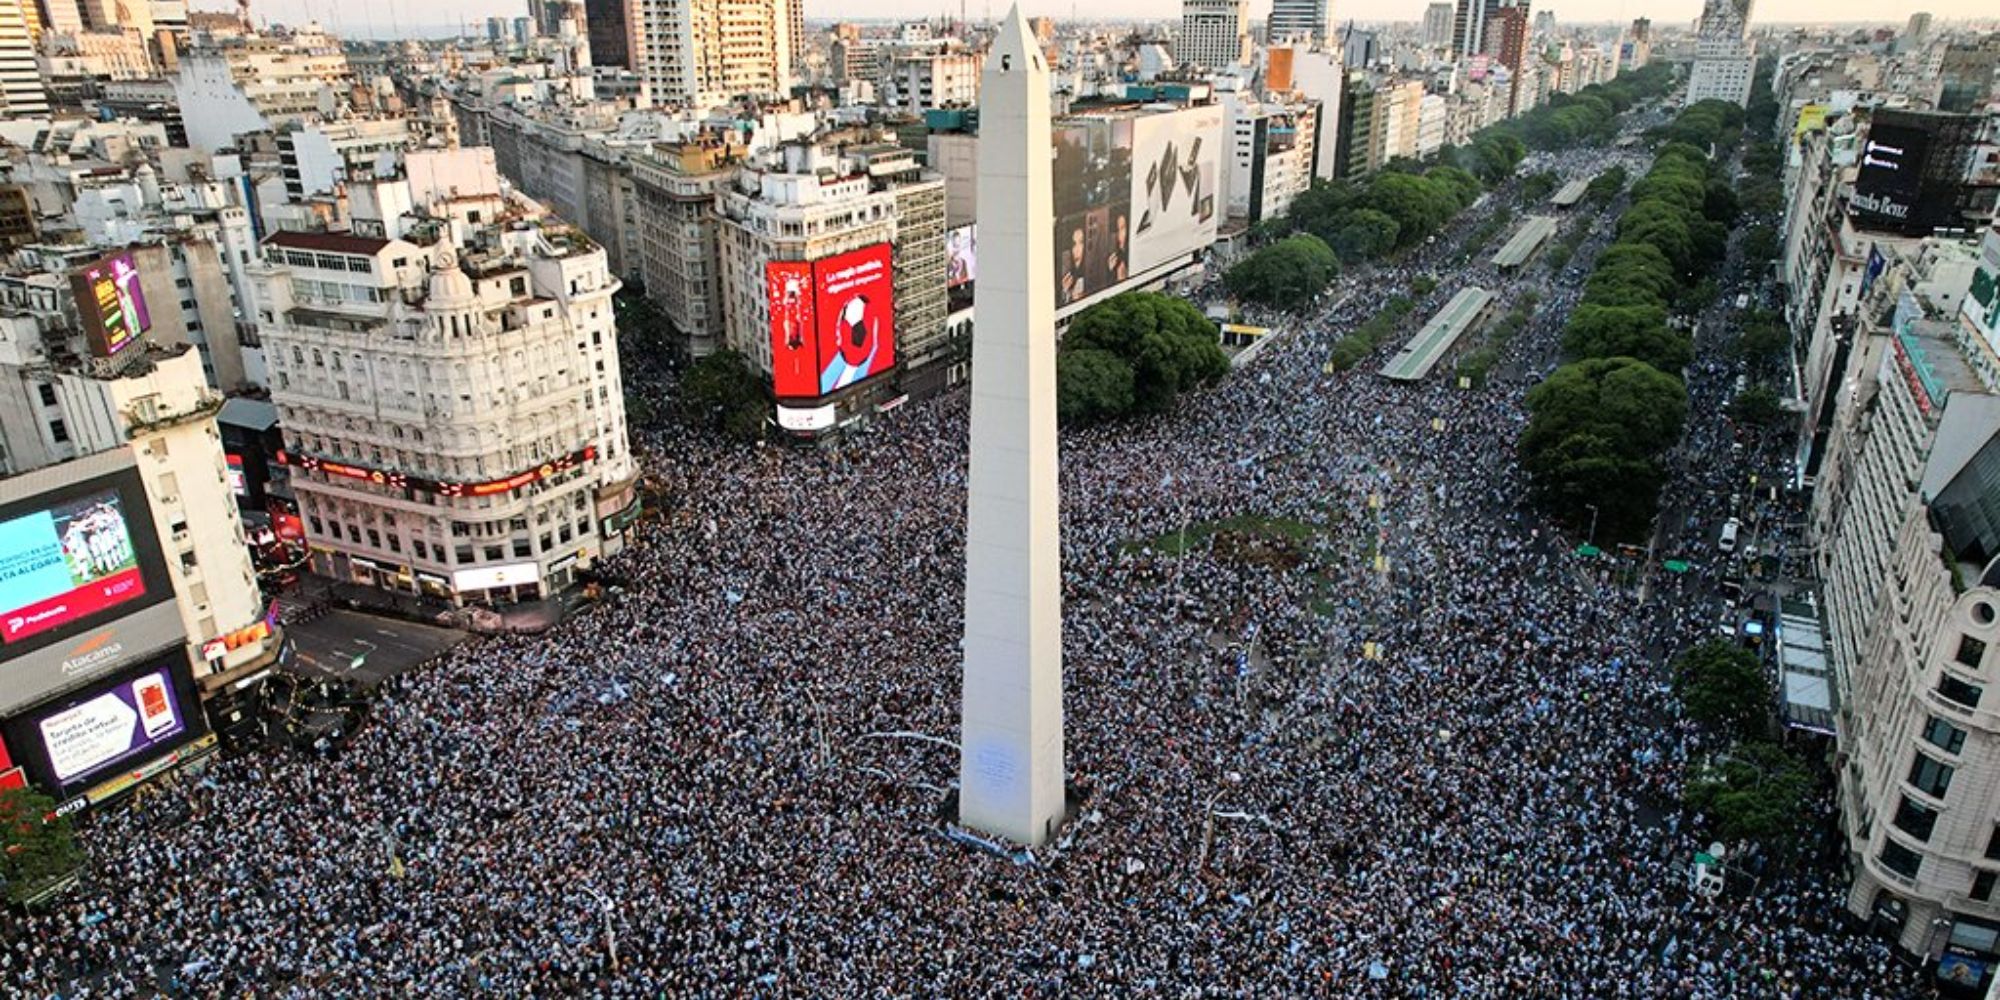 Εικόνα από το κέντρο του Μπουένος Άιρες με τους πανηγυρισμούς